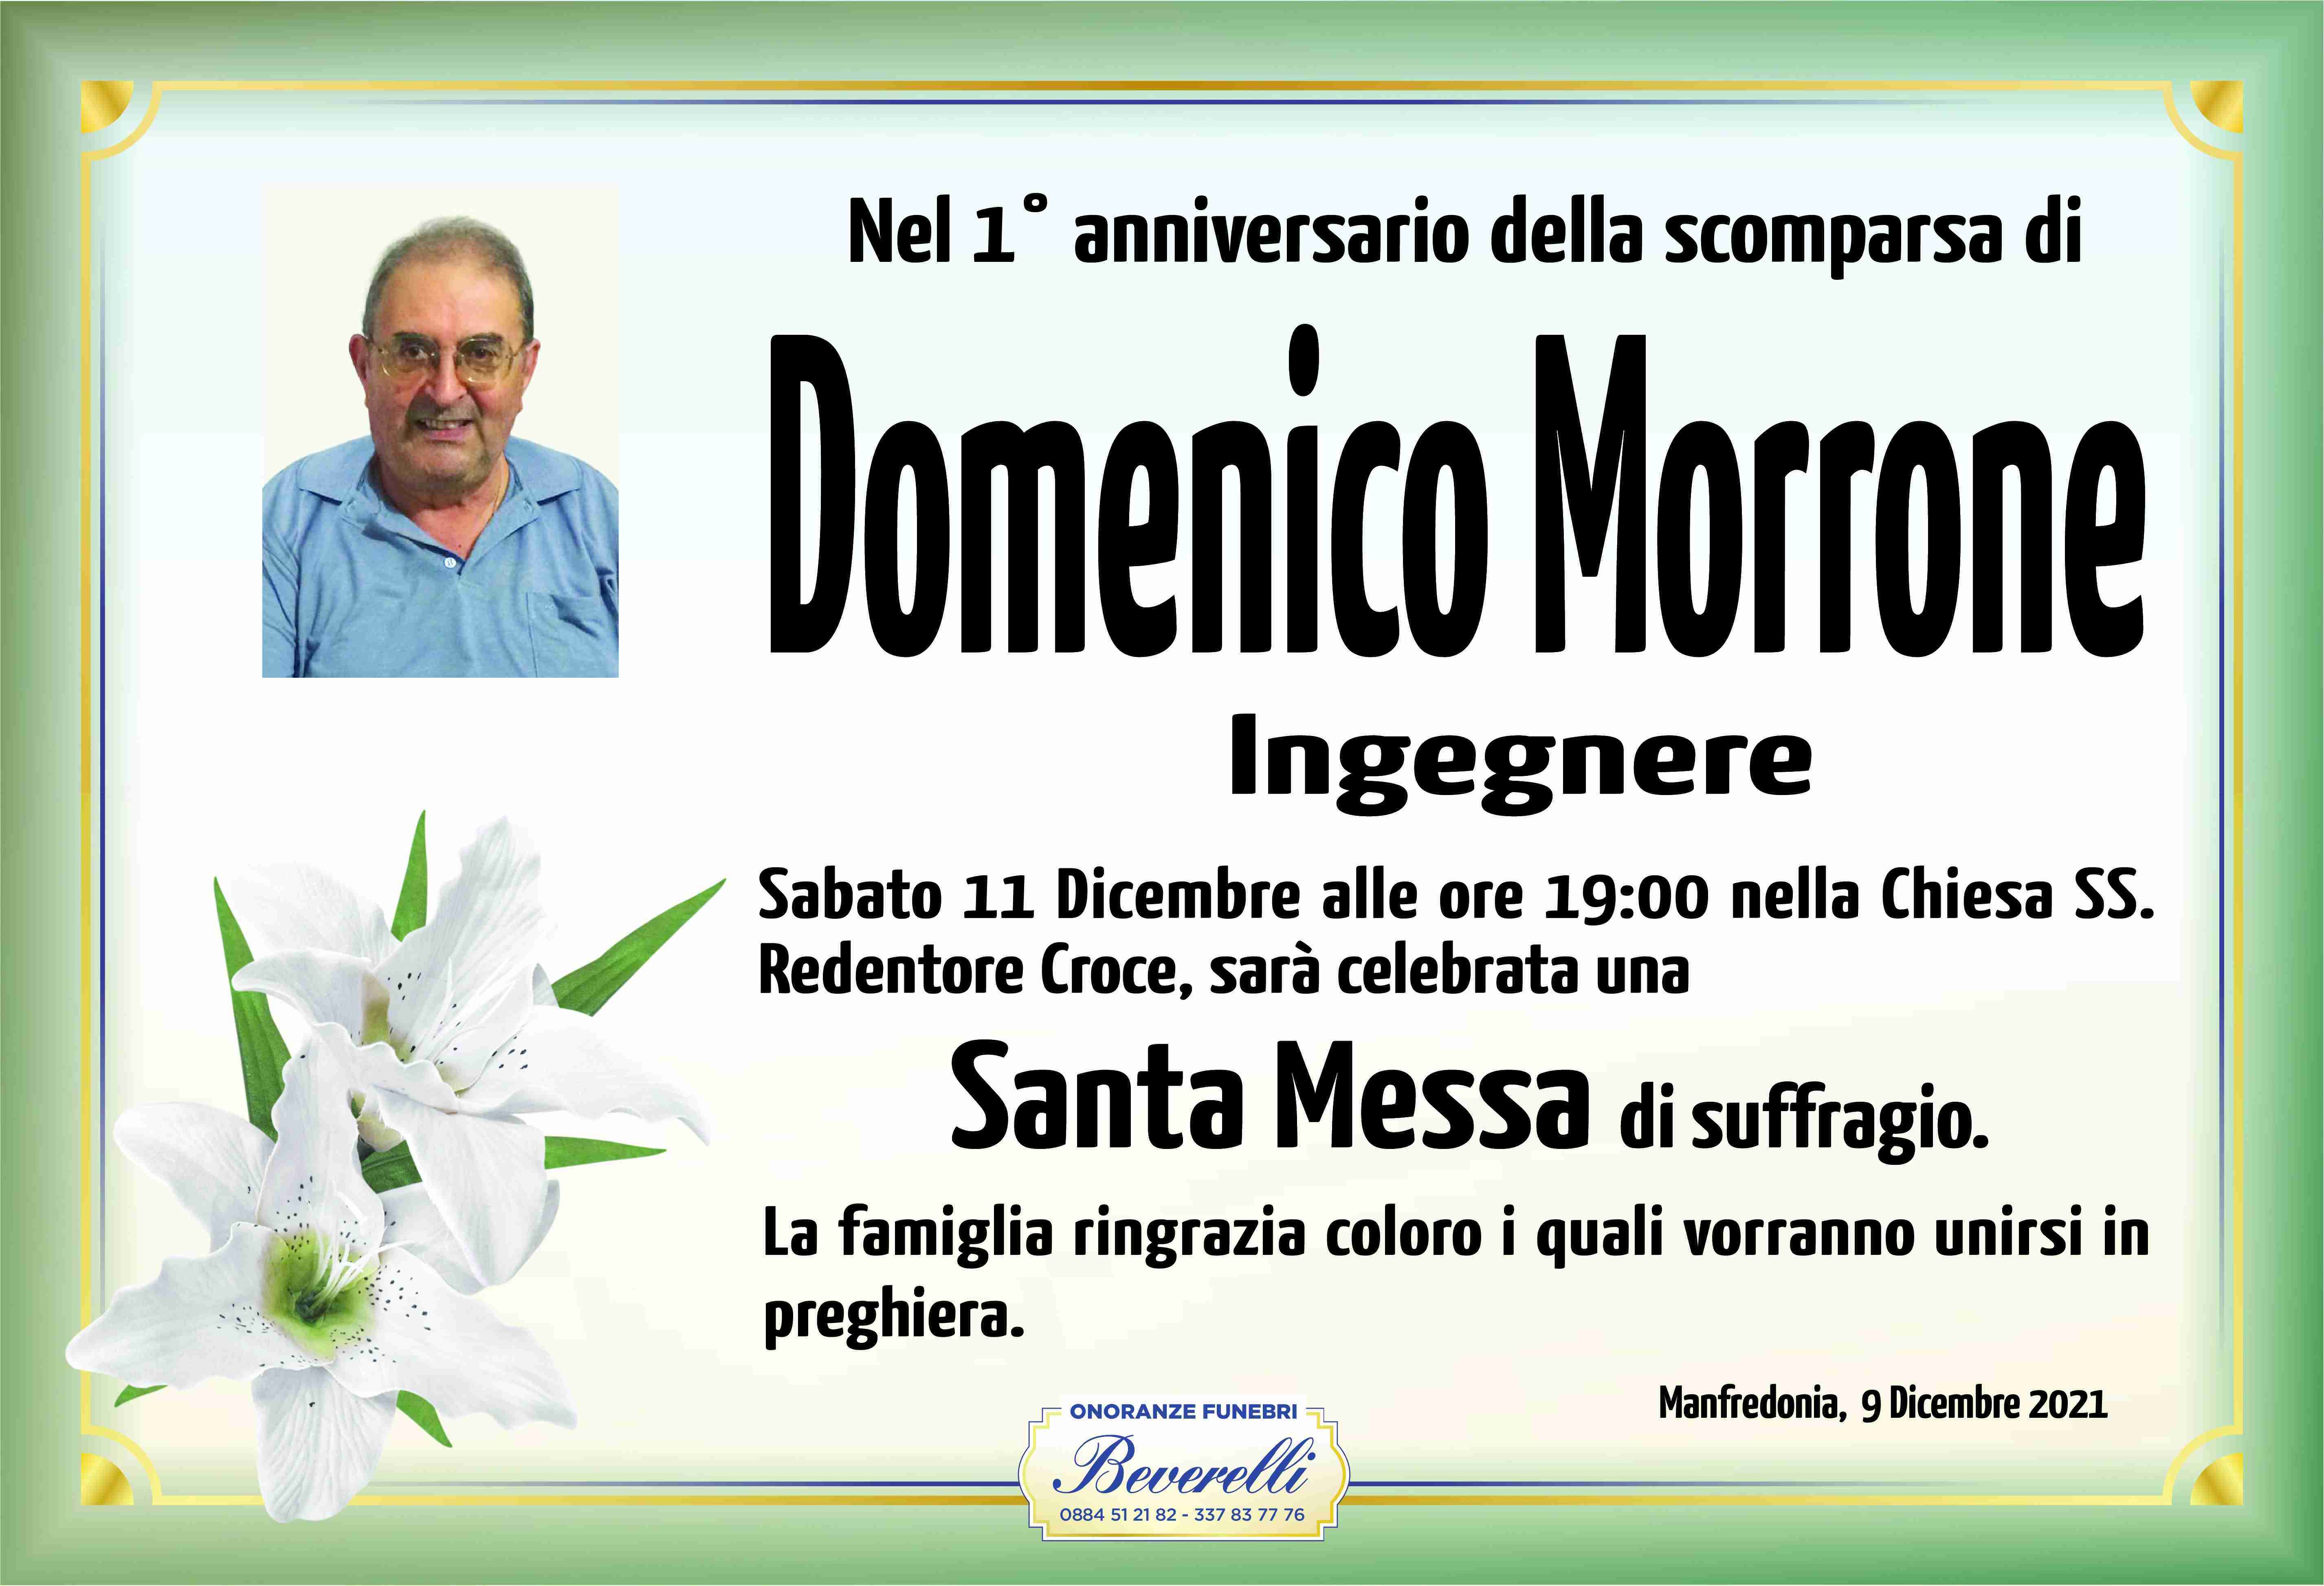 Domenico Morrone